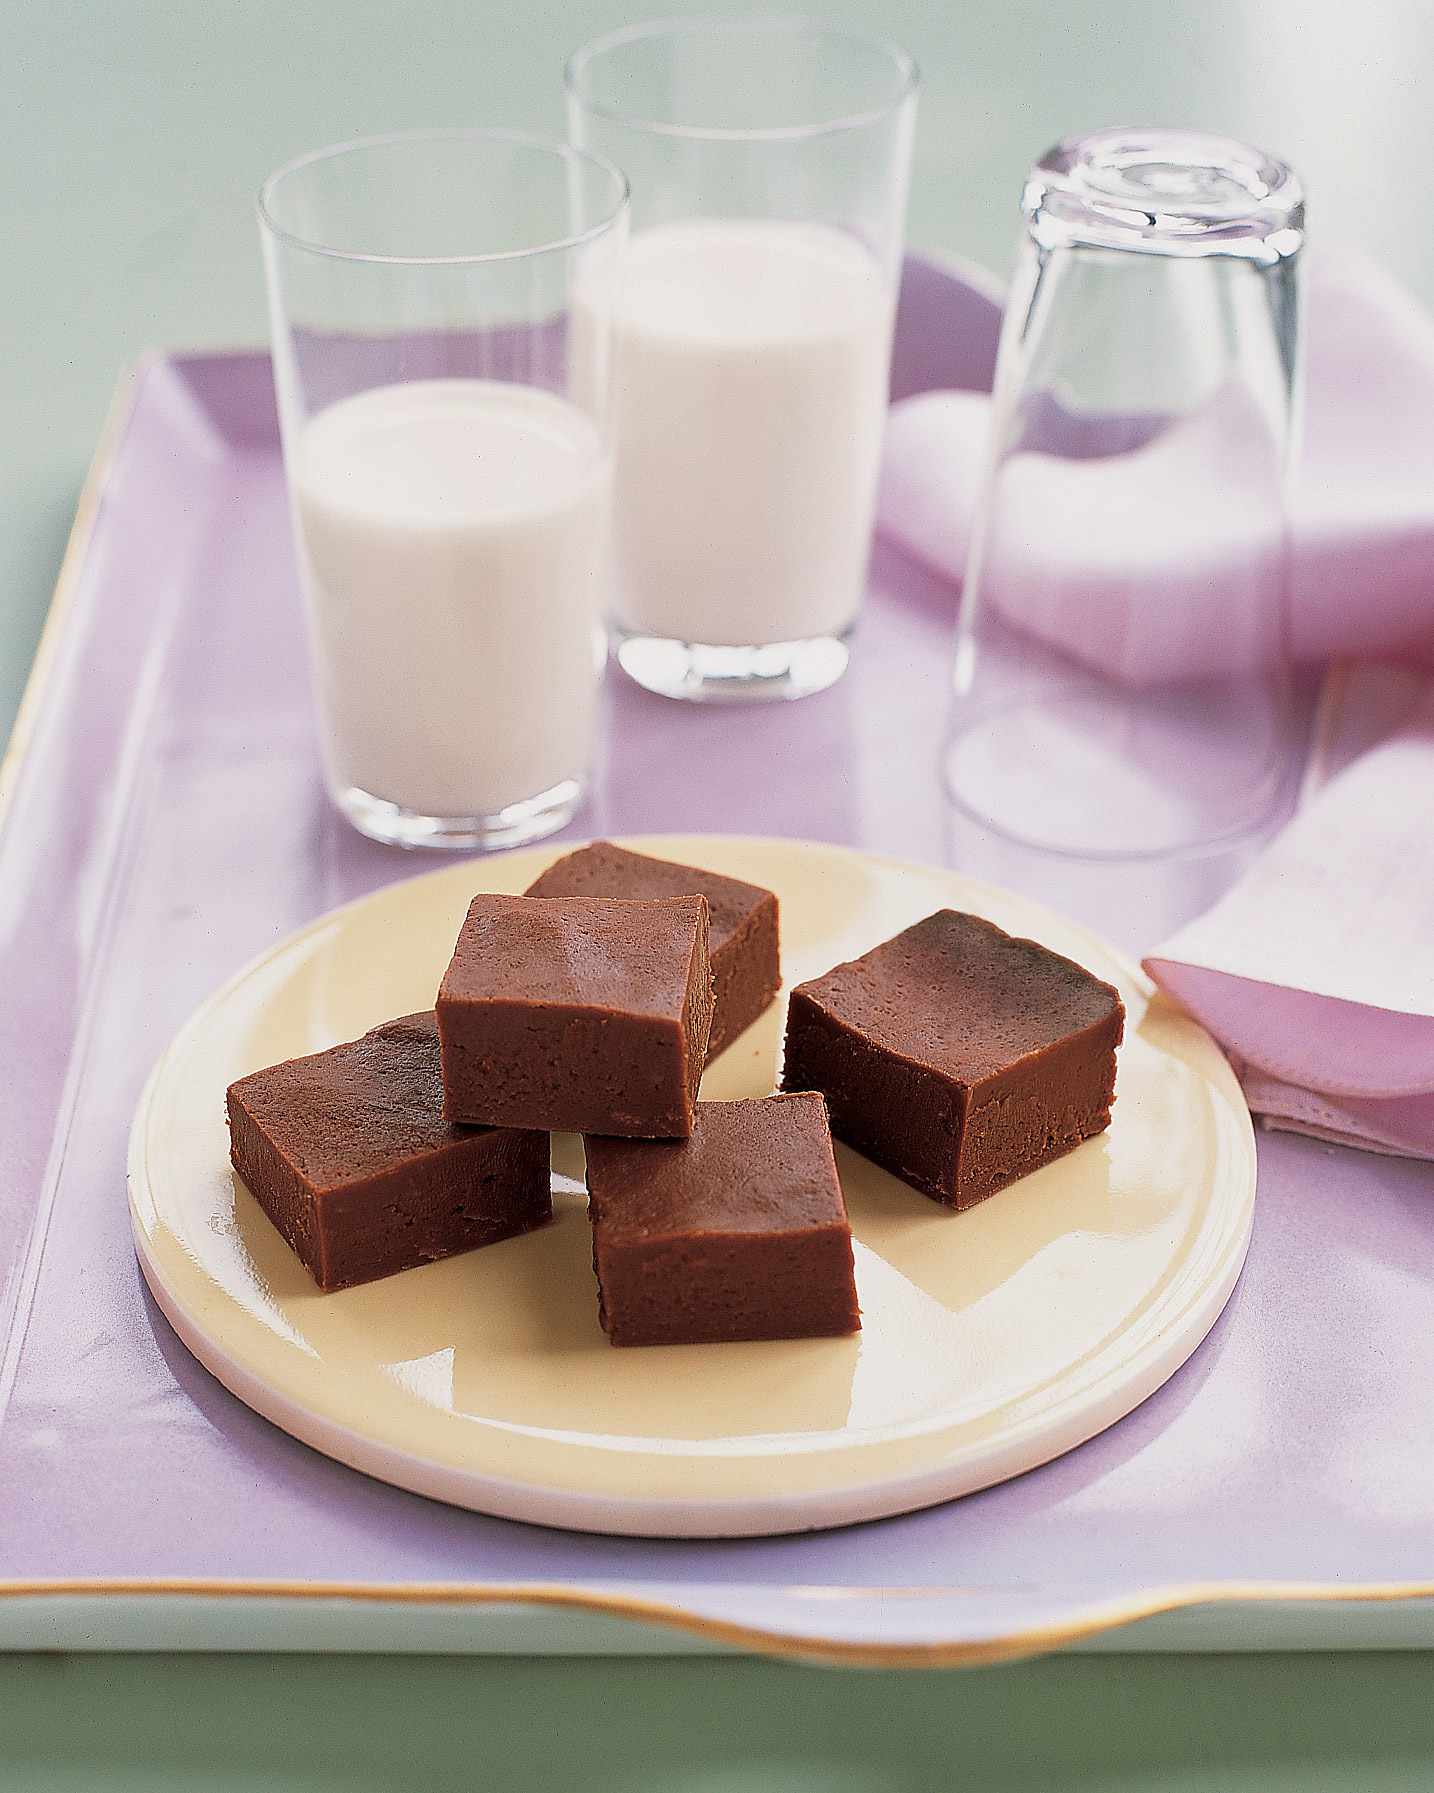 How to Make Chocolate Fudge